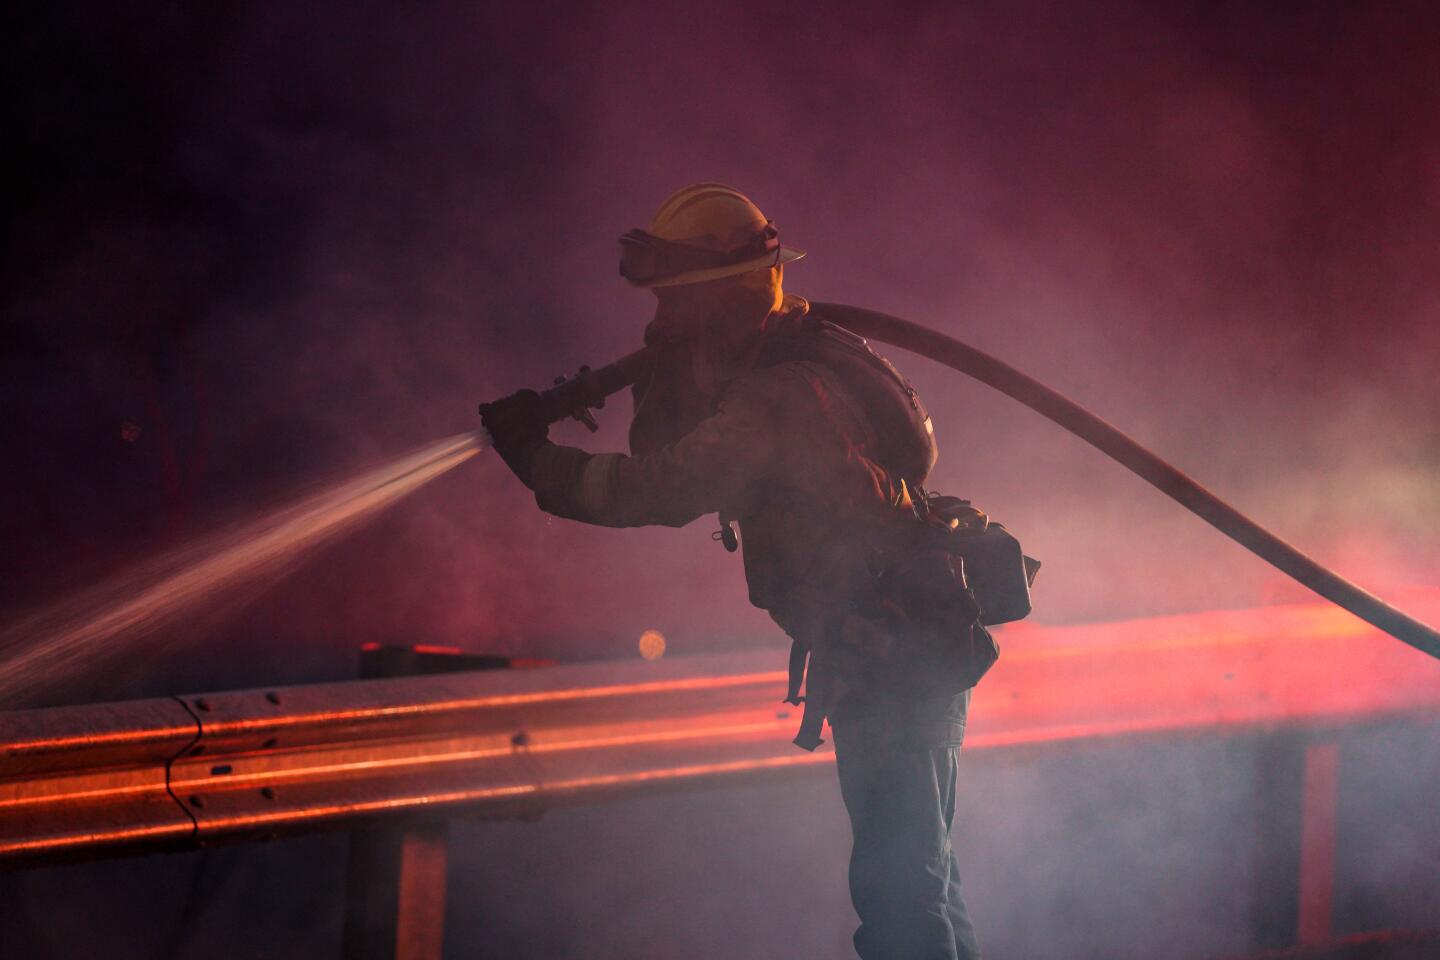 A firefighter sprays a hose over a railing.